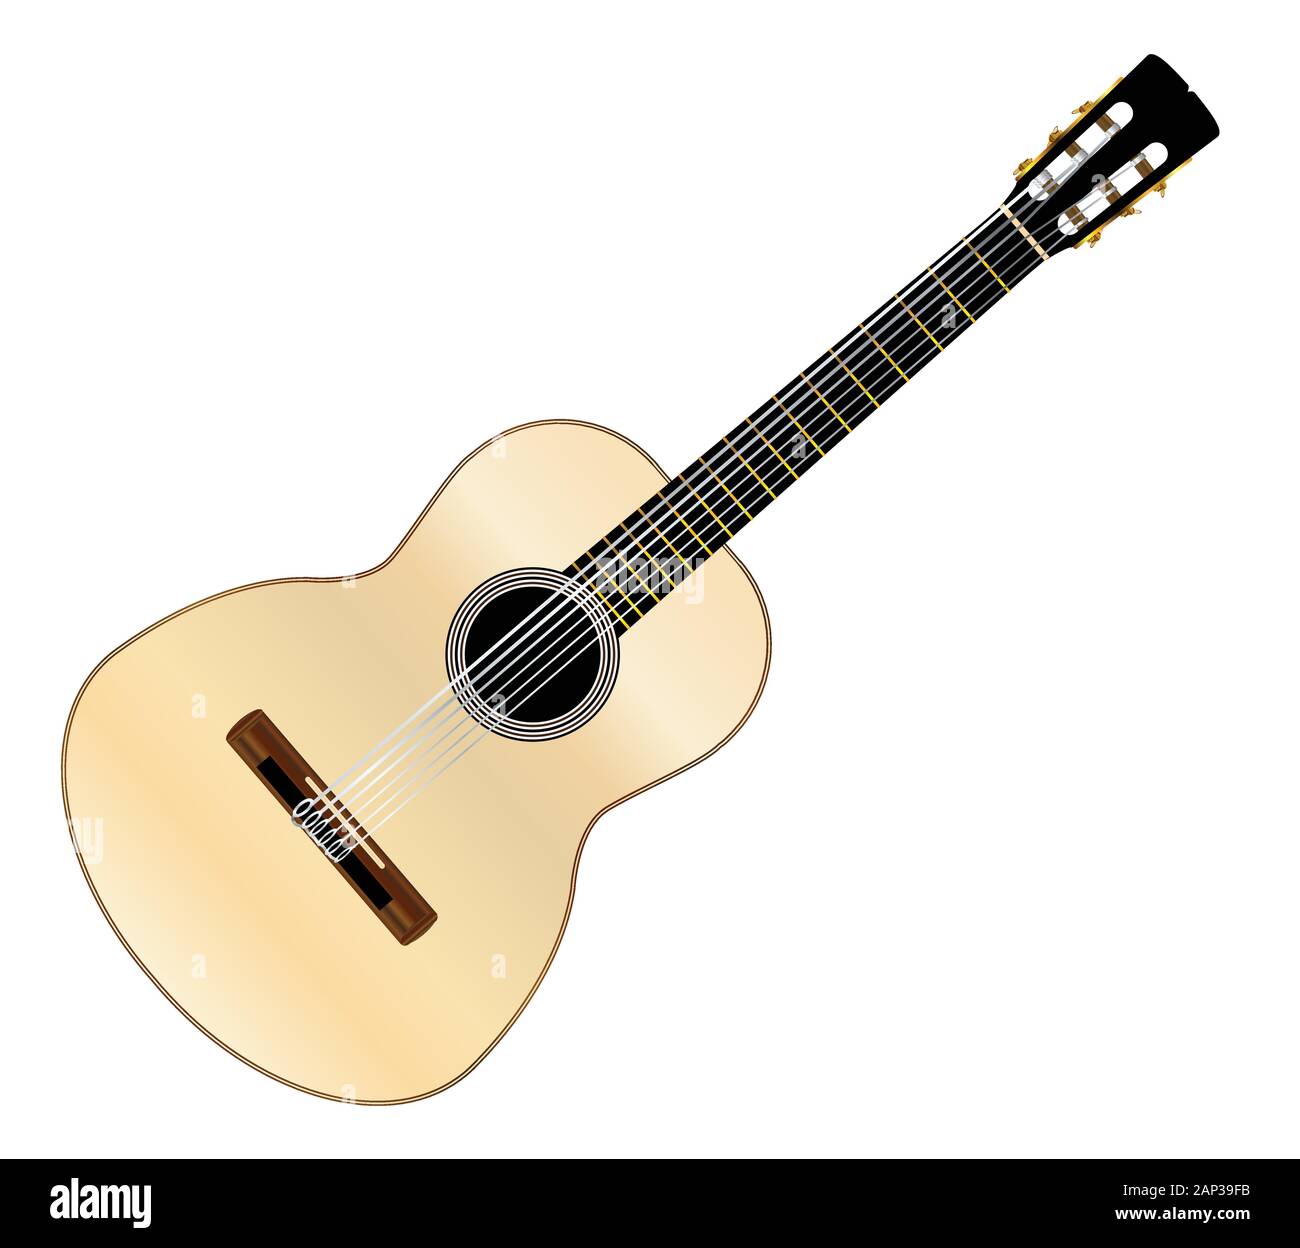 Une guitare acoustique flamenco espagnol typique isolé sur un fond blanc. Illustration de Vecteur